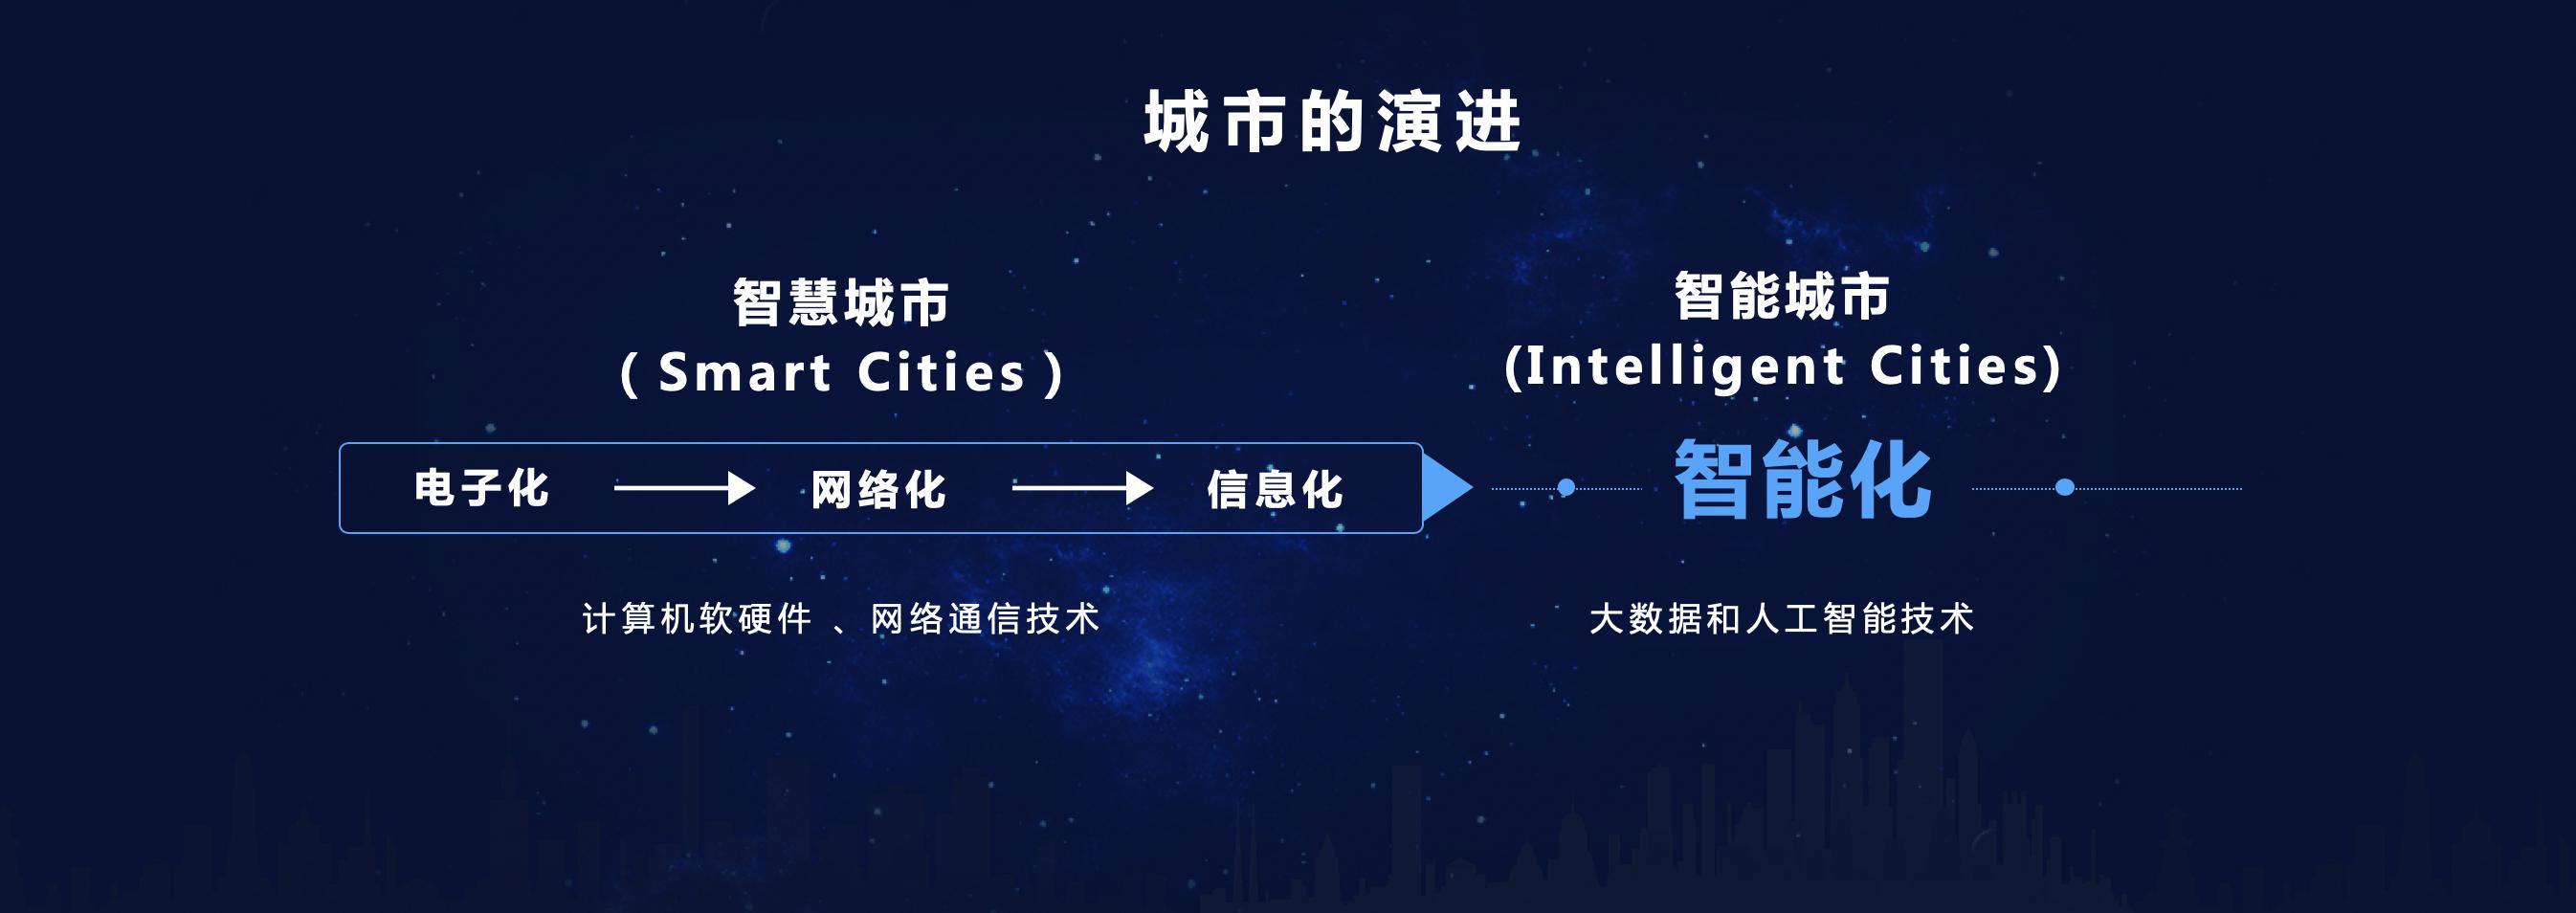 智能城市成未来风口  京东城市发布合伙人计划共建开放生态